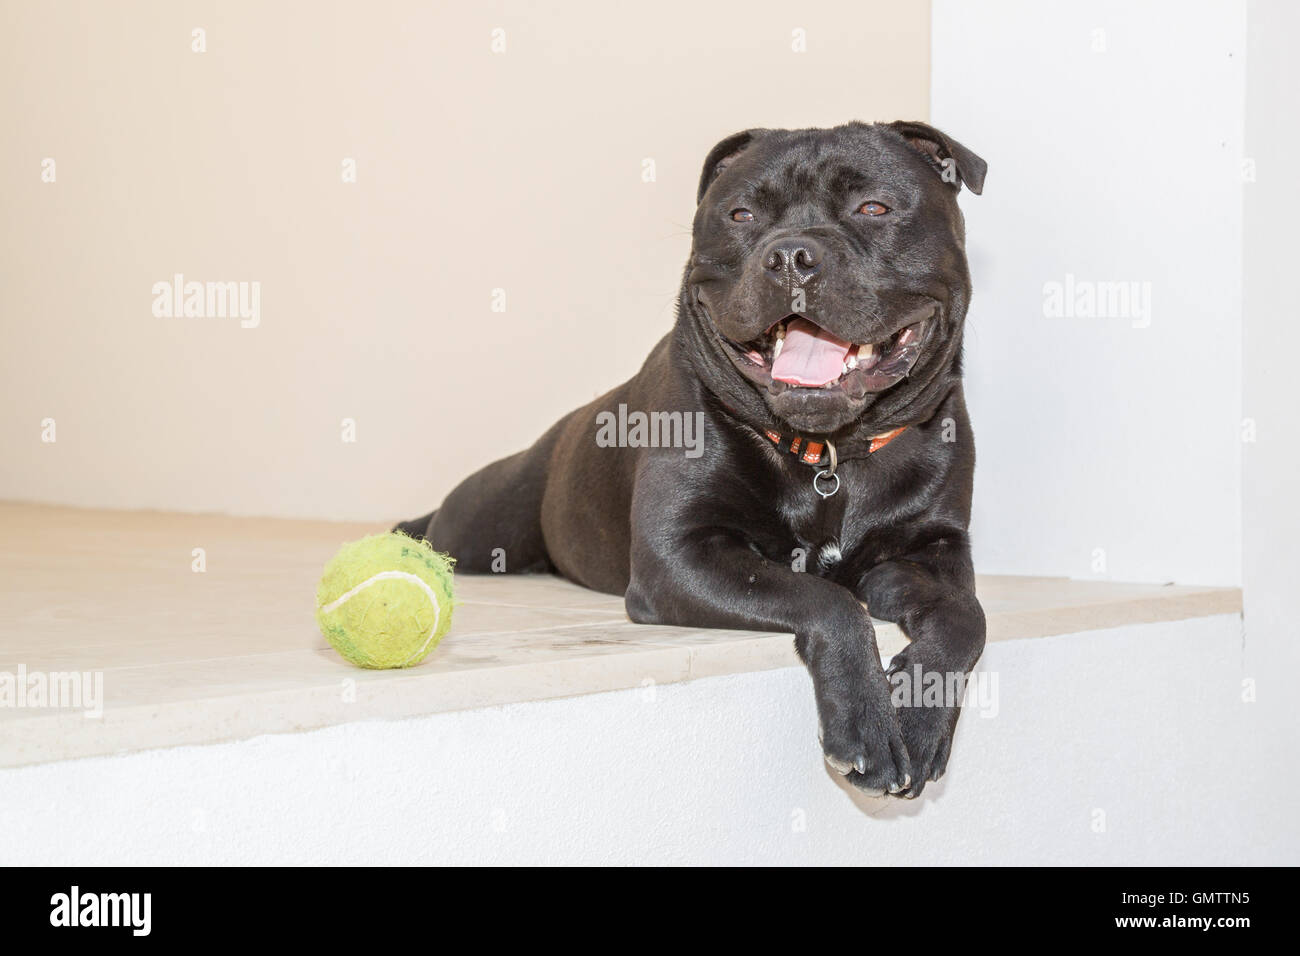 Portrait d'un Staffordshire Bull Terrier chien couché à l'extérieur sur la pierre blanche. Il a une balle de tennis à ses côtés. Sa bouche est o Banque D'Images